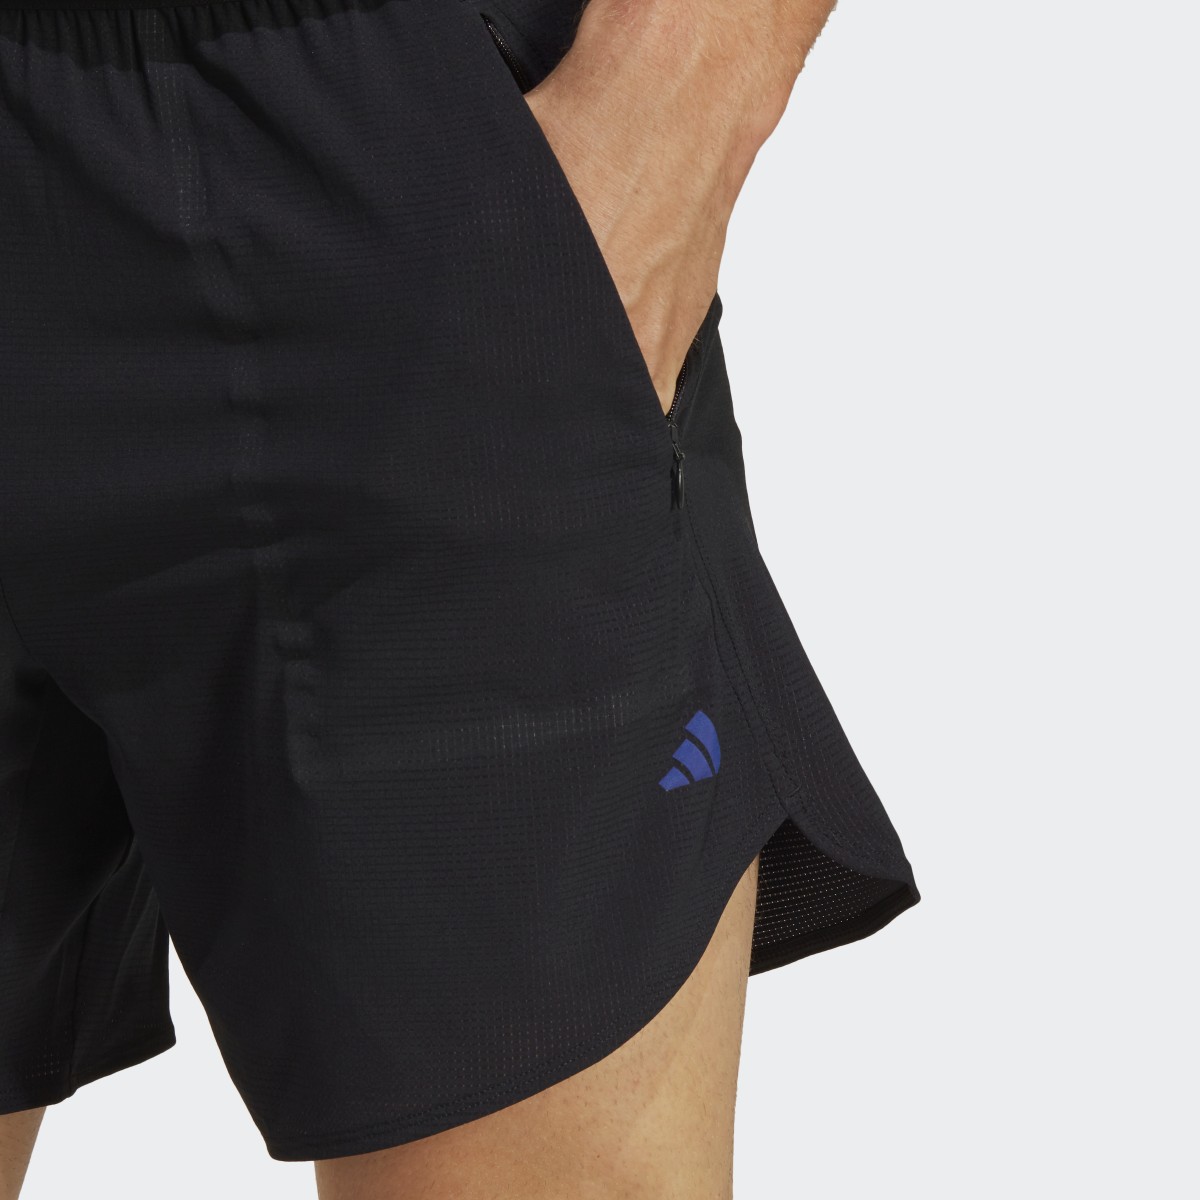 Adidas Designed for Training HIIT Training Shorts. 6